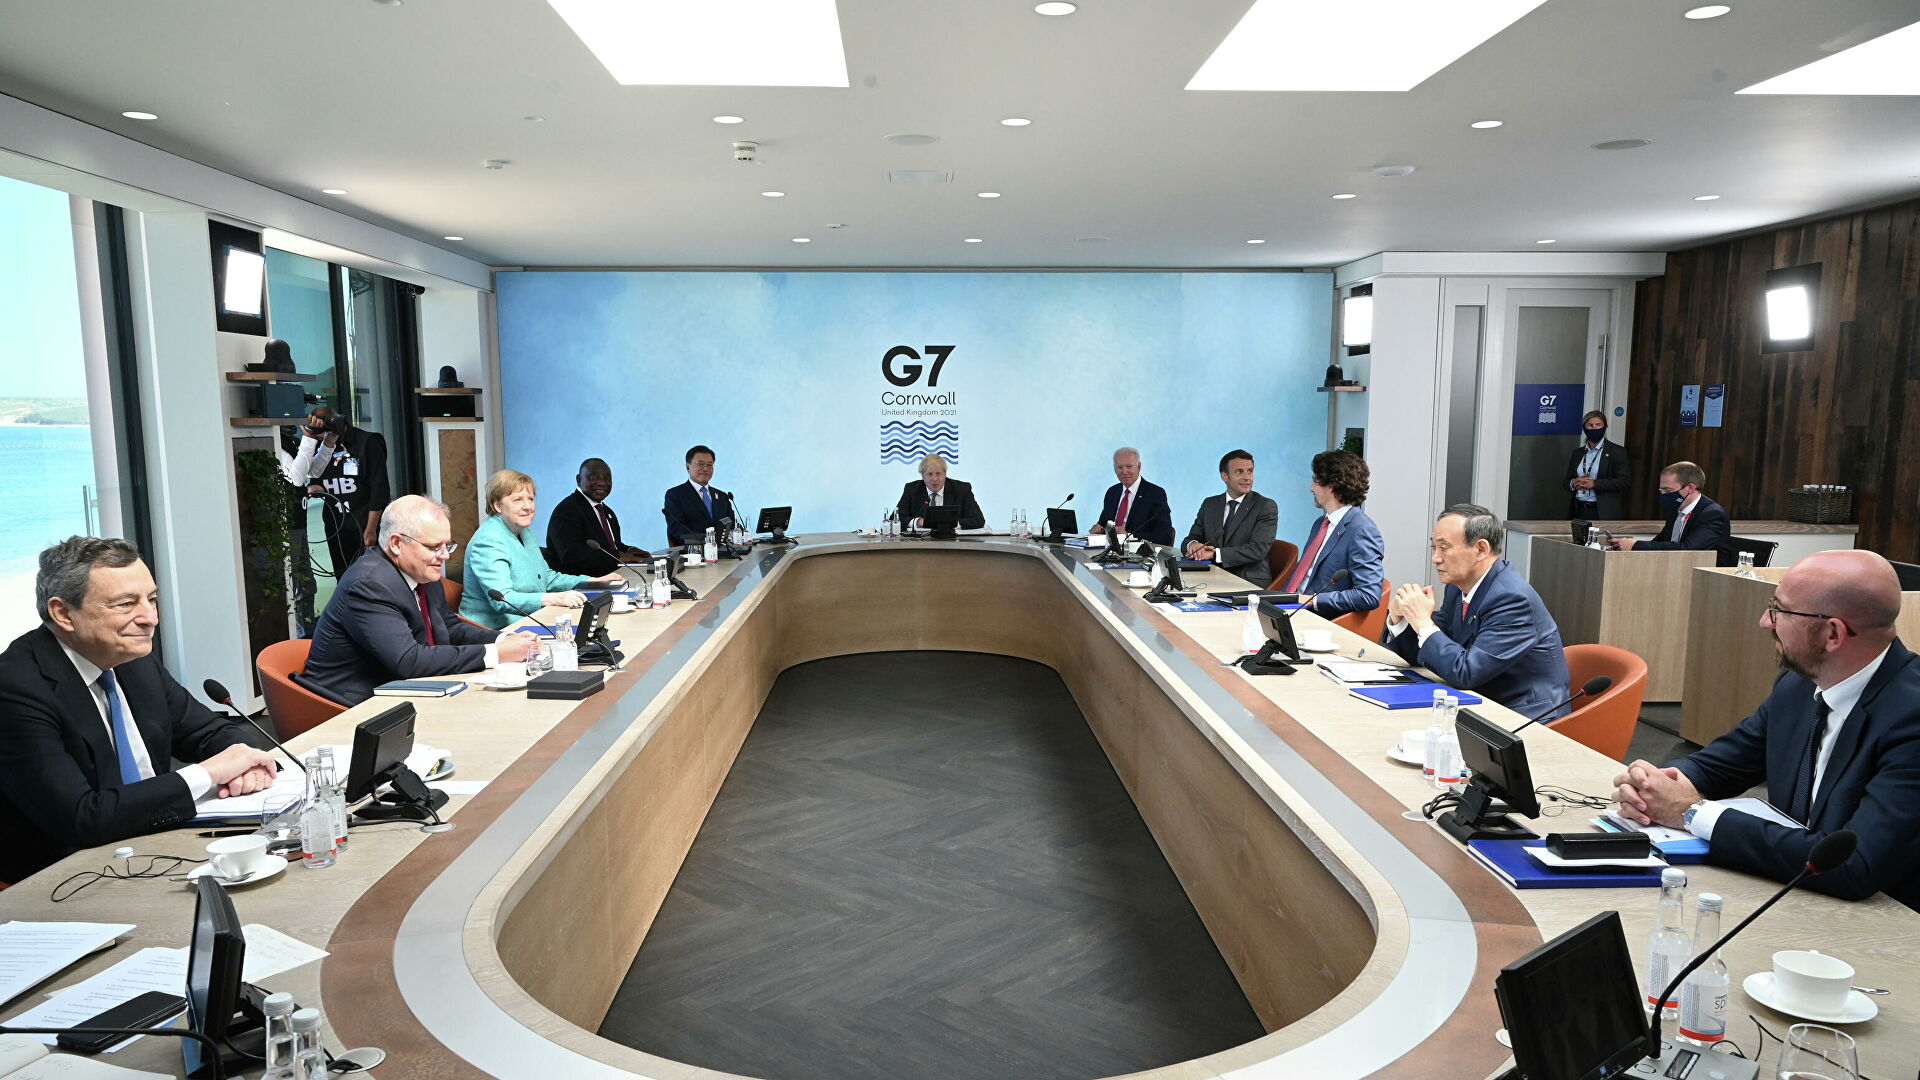  G7     